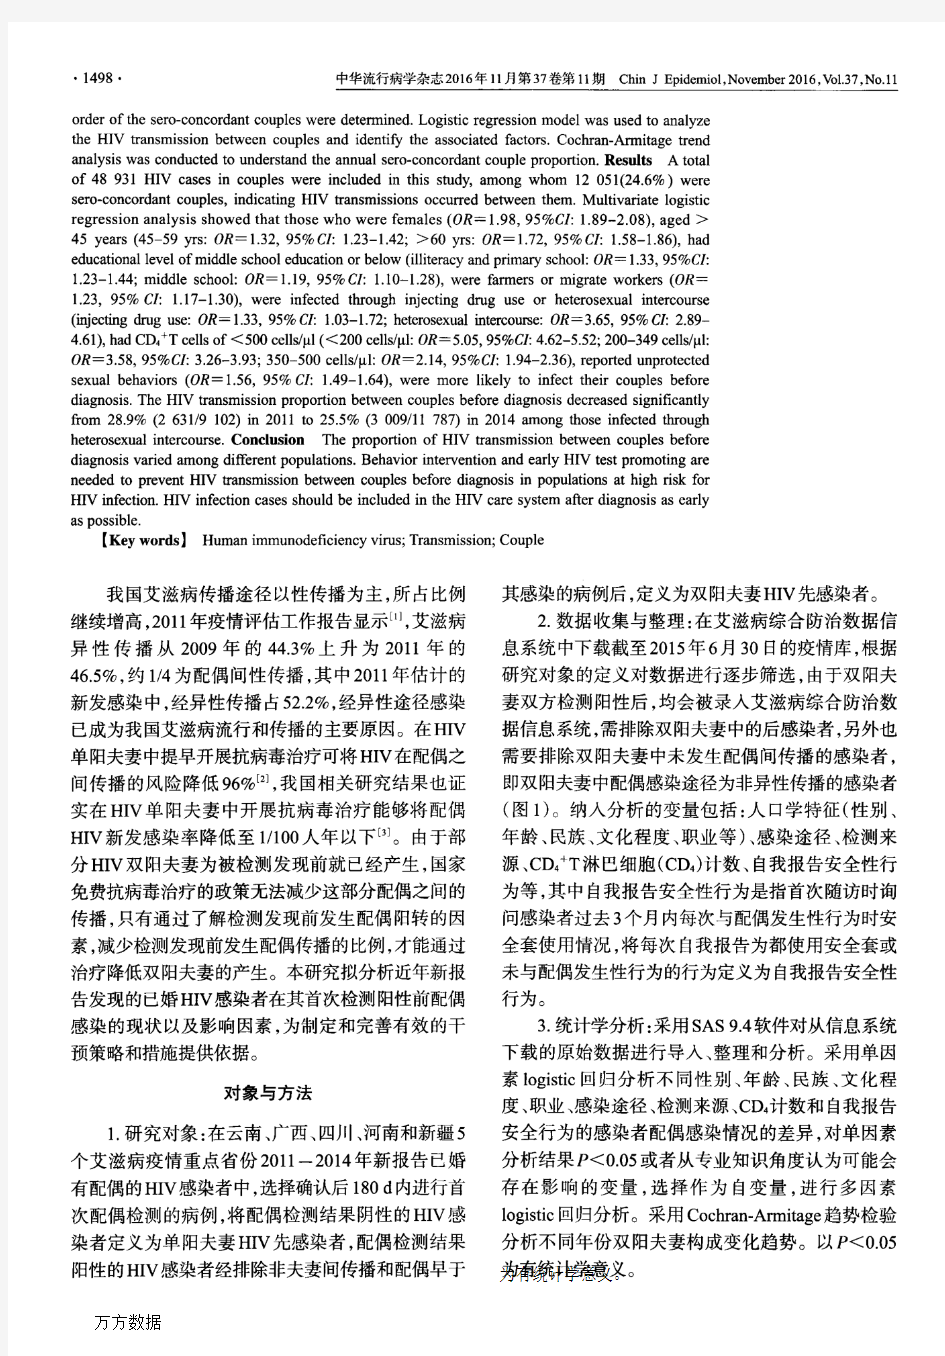 中国5省份2011-2014年新发现HIV感染者检测阳性前配偶感染情况及影响因素分析论文